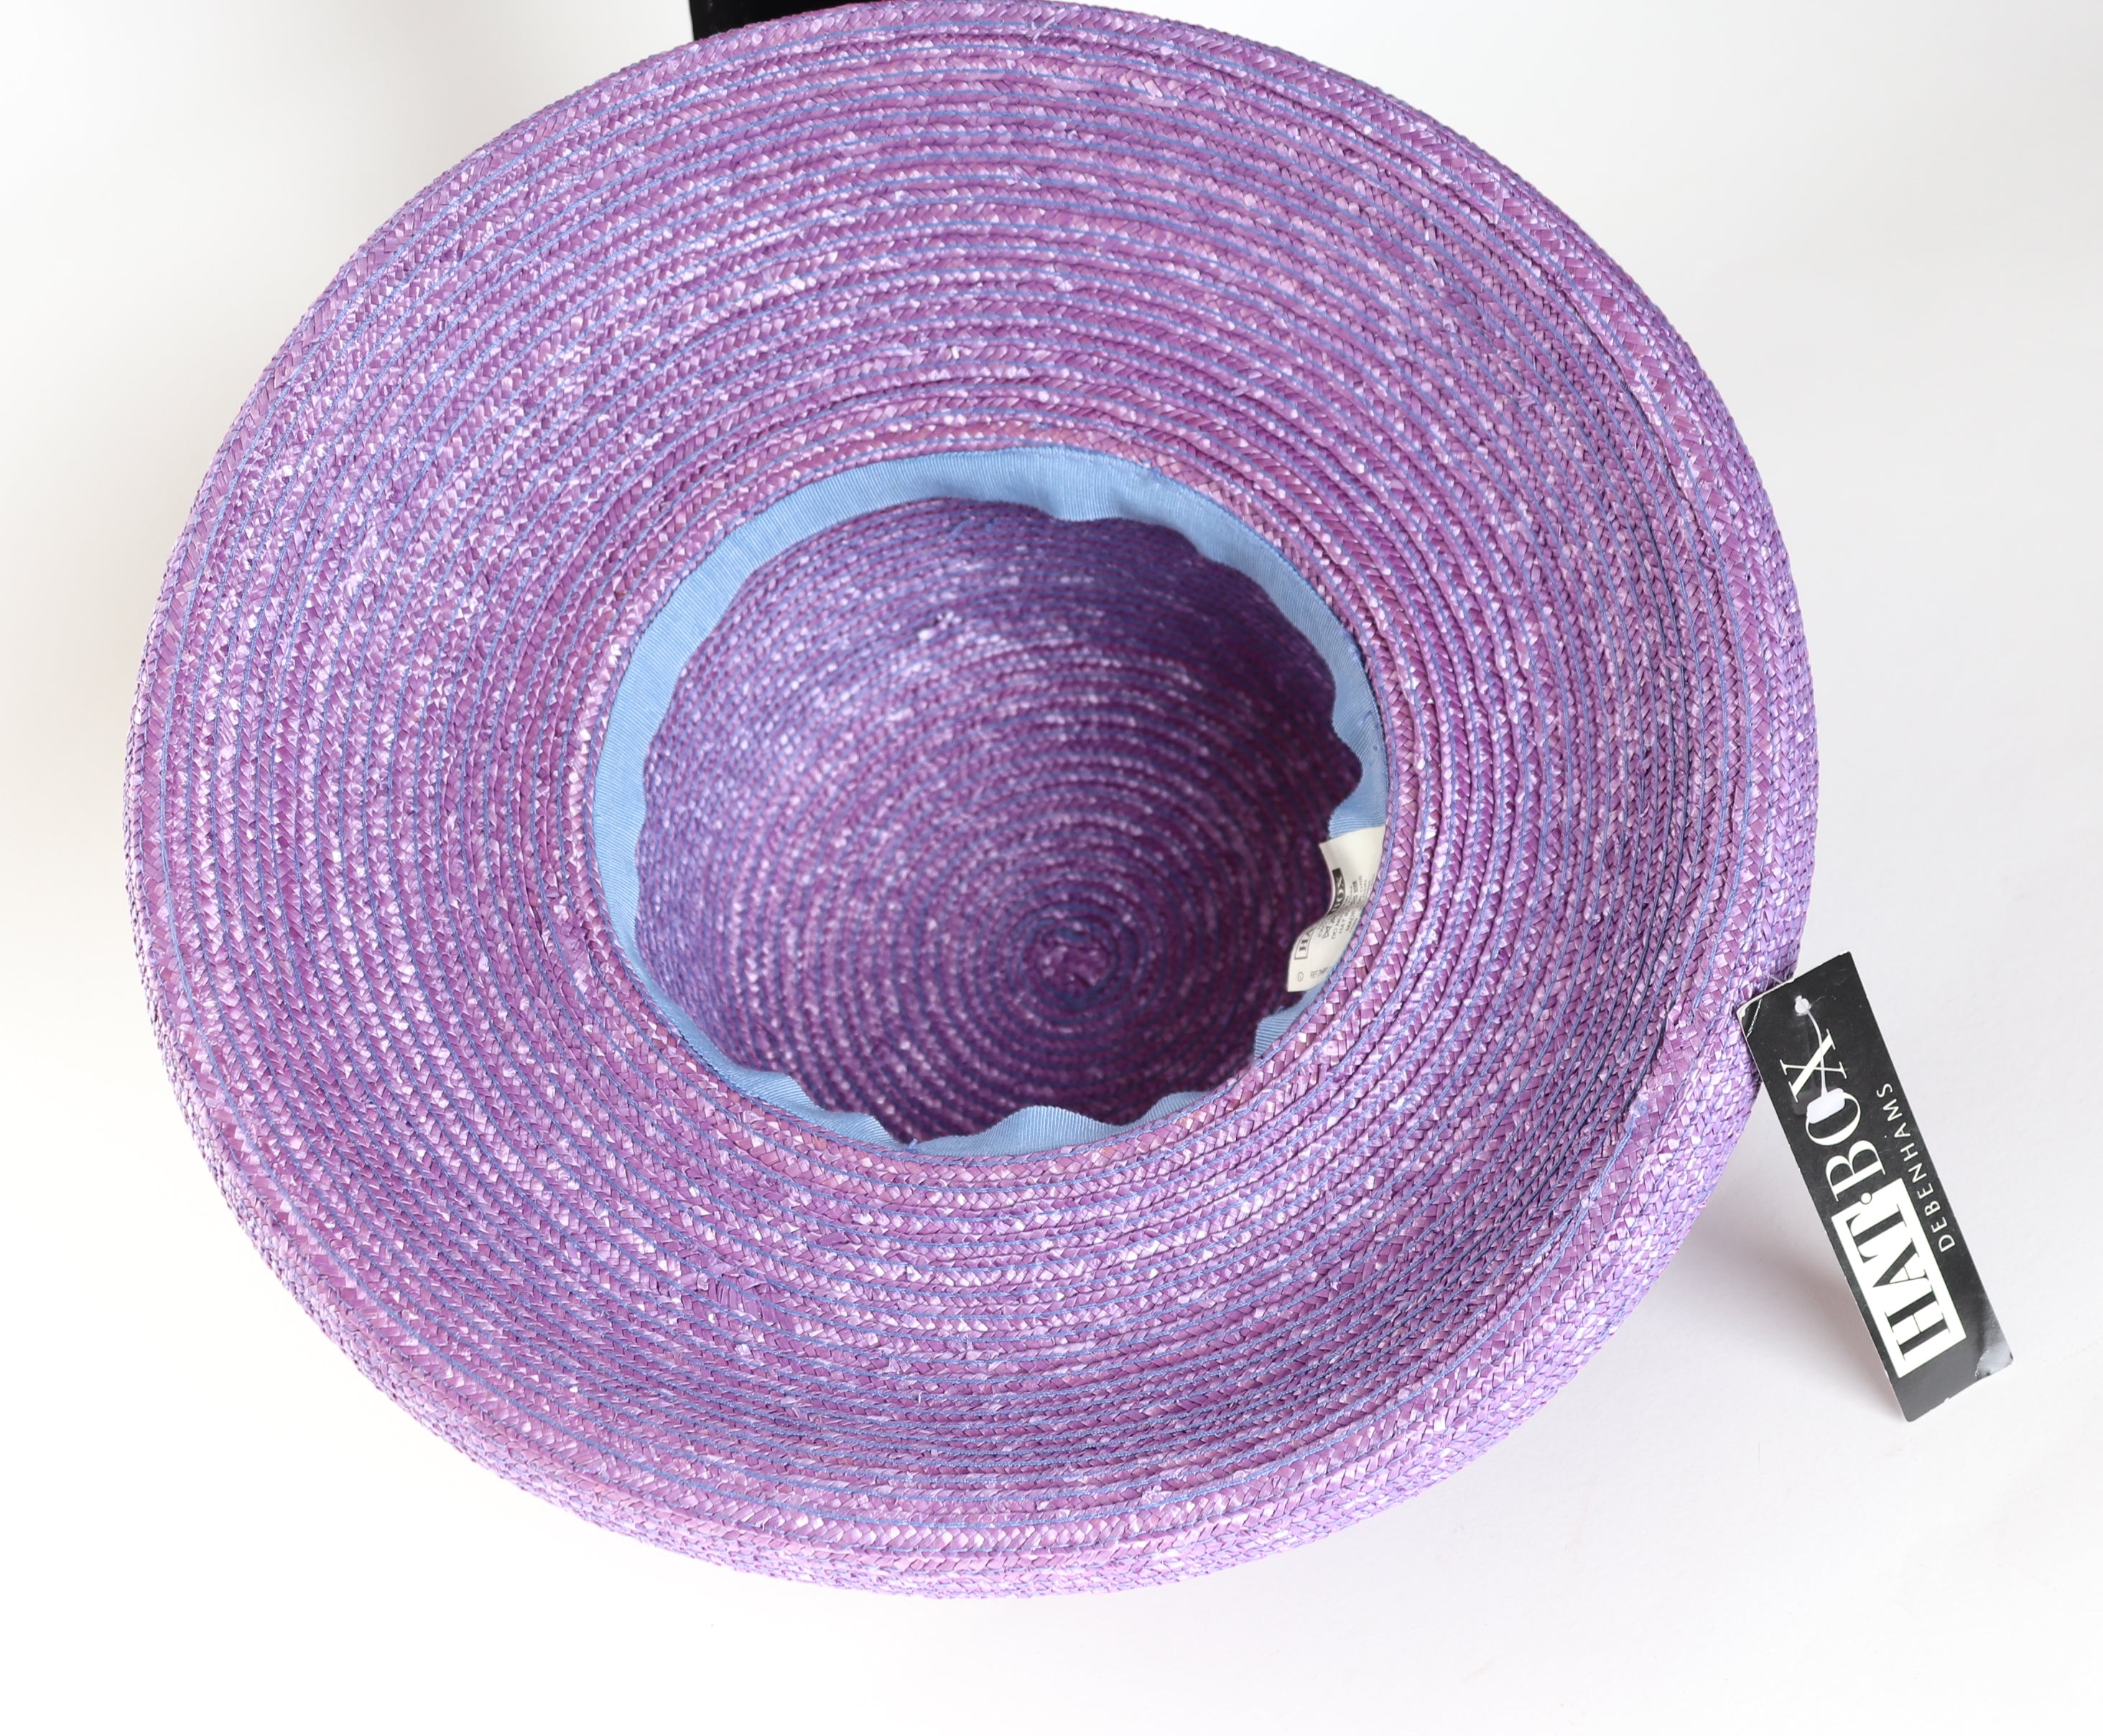 Vintage Wide Brim Hat - Debenhams 1990s - Lilac Purple - Belle Epoque Style- L